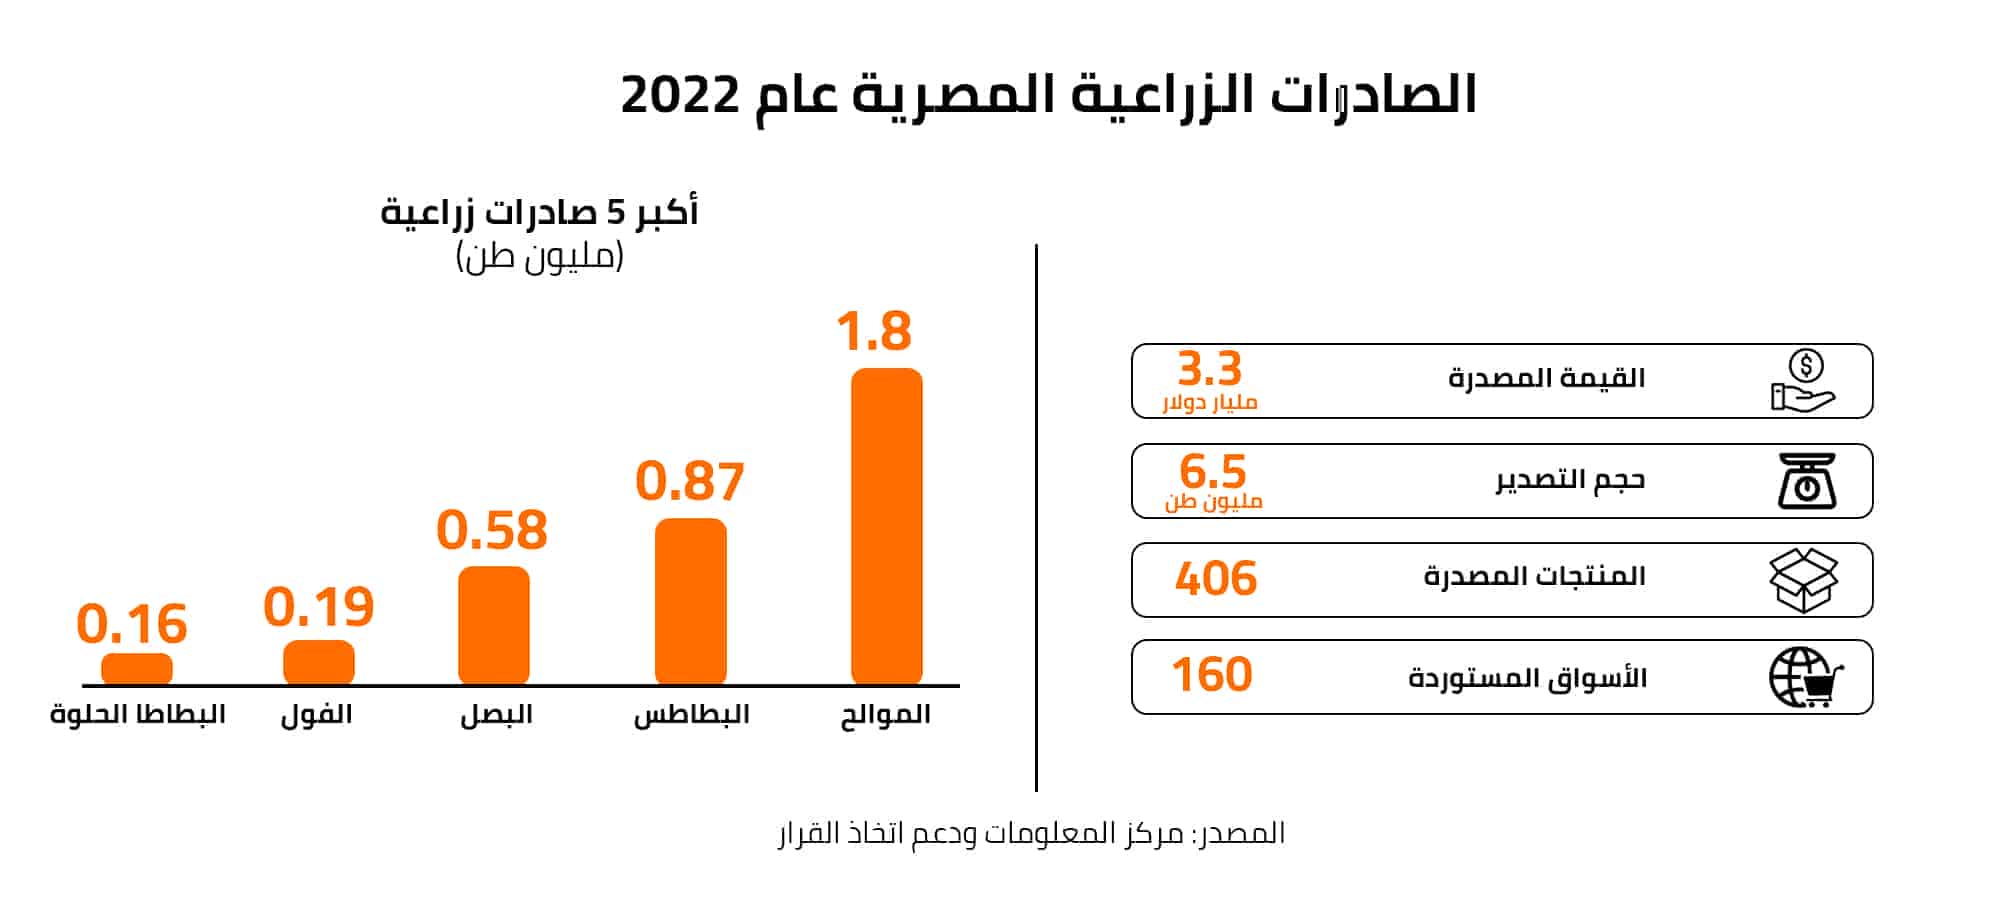 الصادرات الزراعية المصرية عام 2022